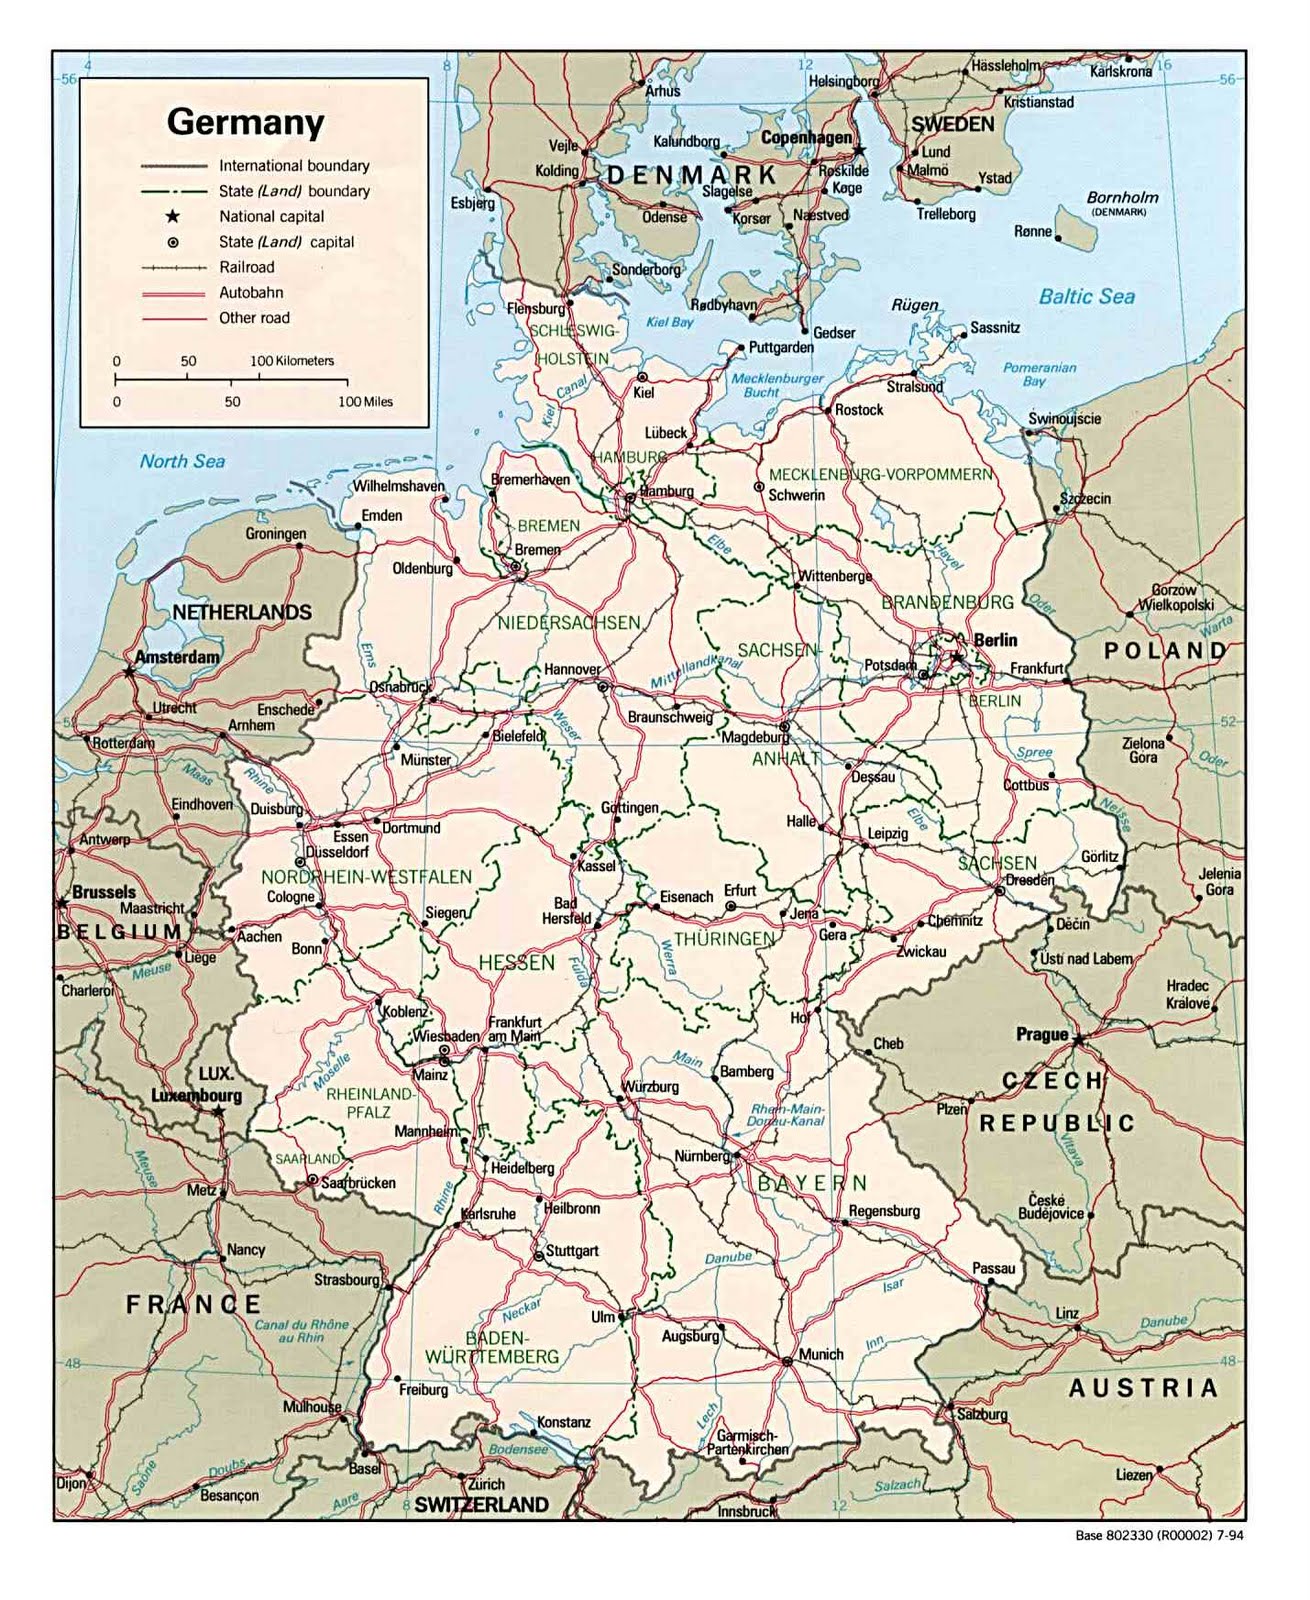 Deutschlandkarte blog: Deutschland karte Region Bild